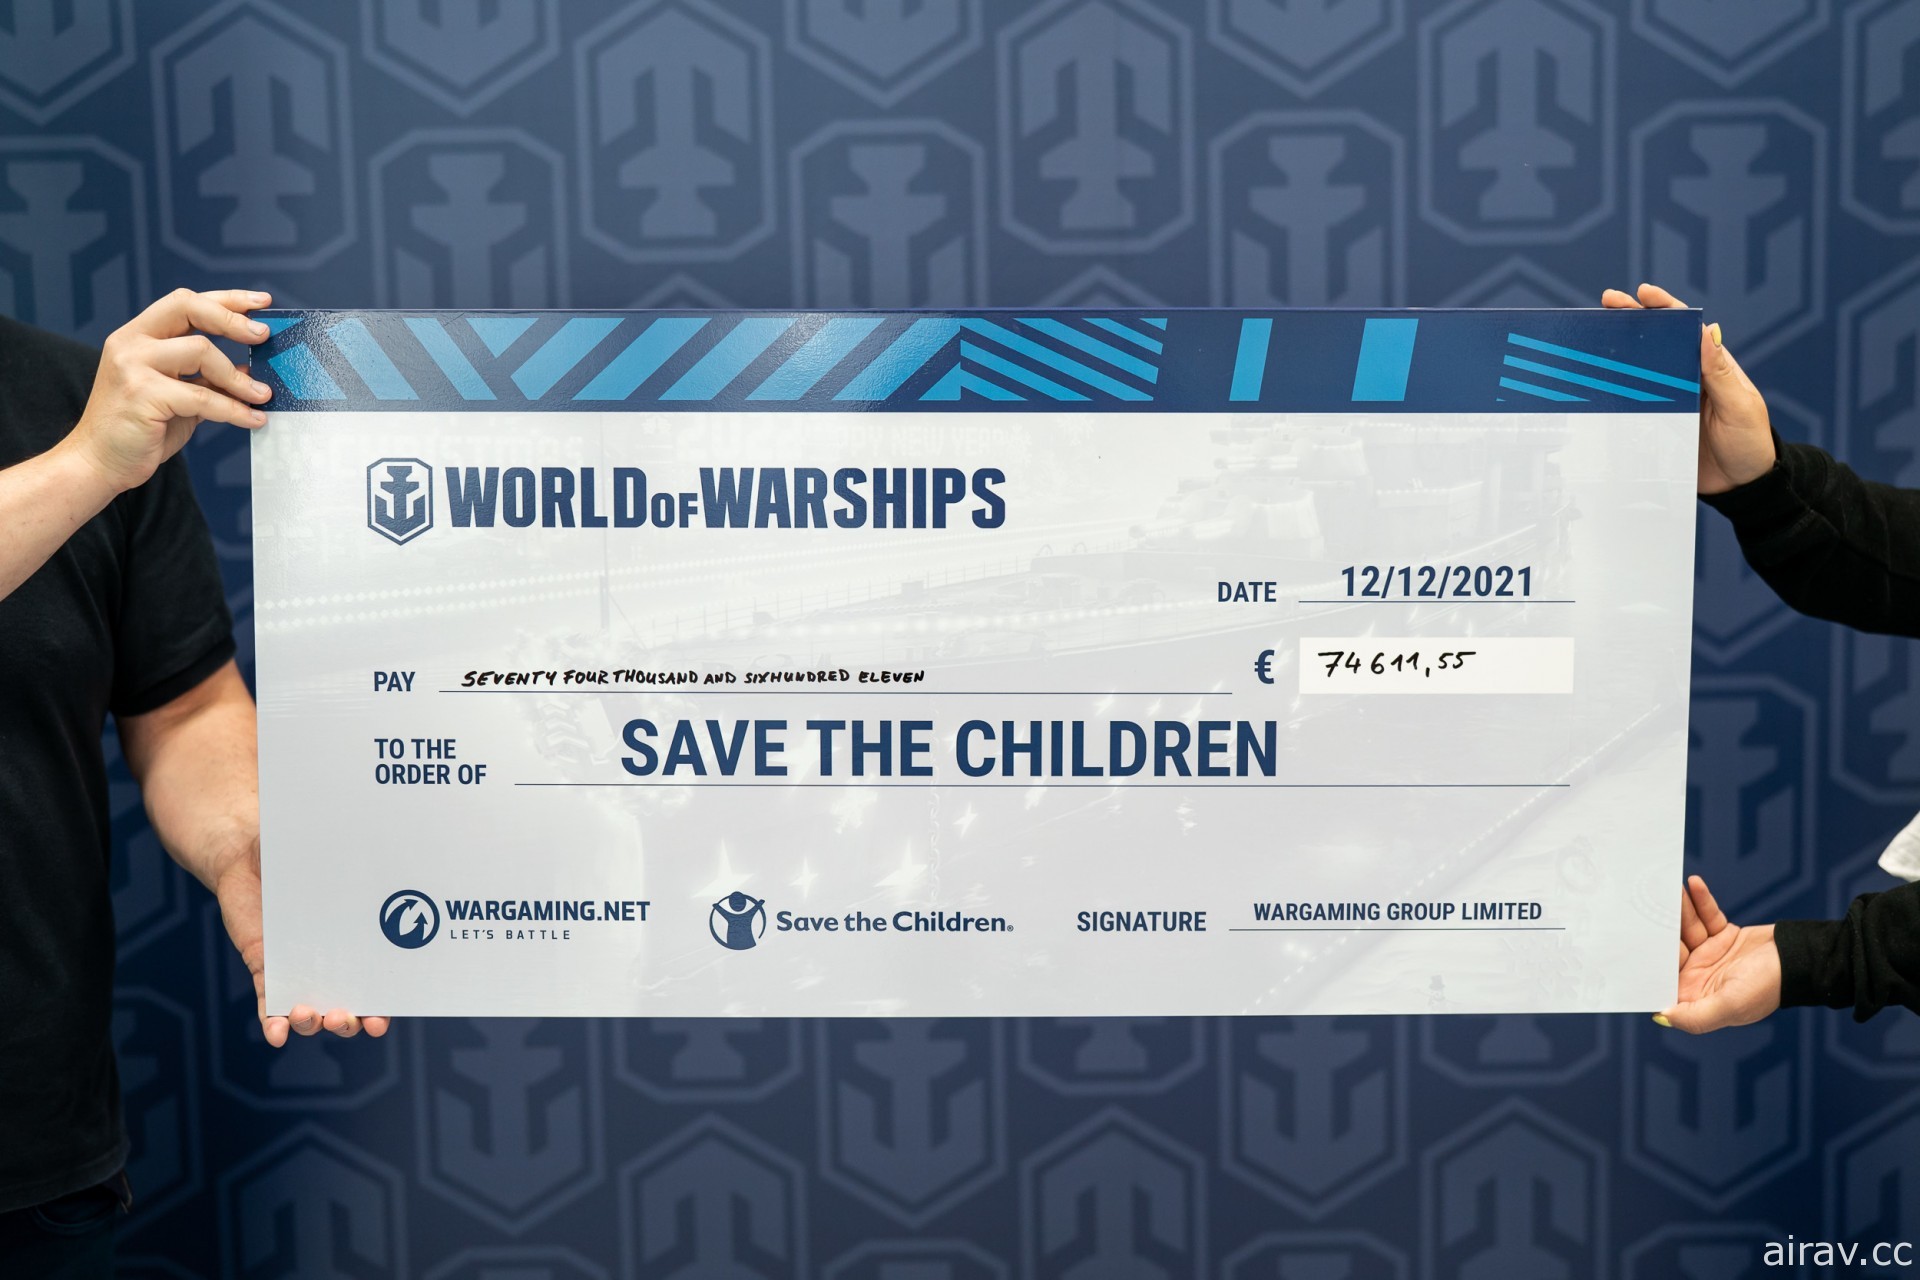 《战舰世界》慈善直播募资新台币 360 万元 将全数捐赠给“救助儿童会”